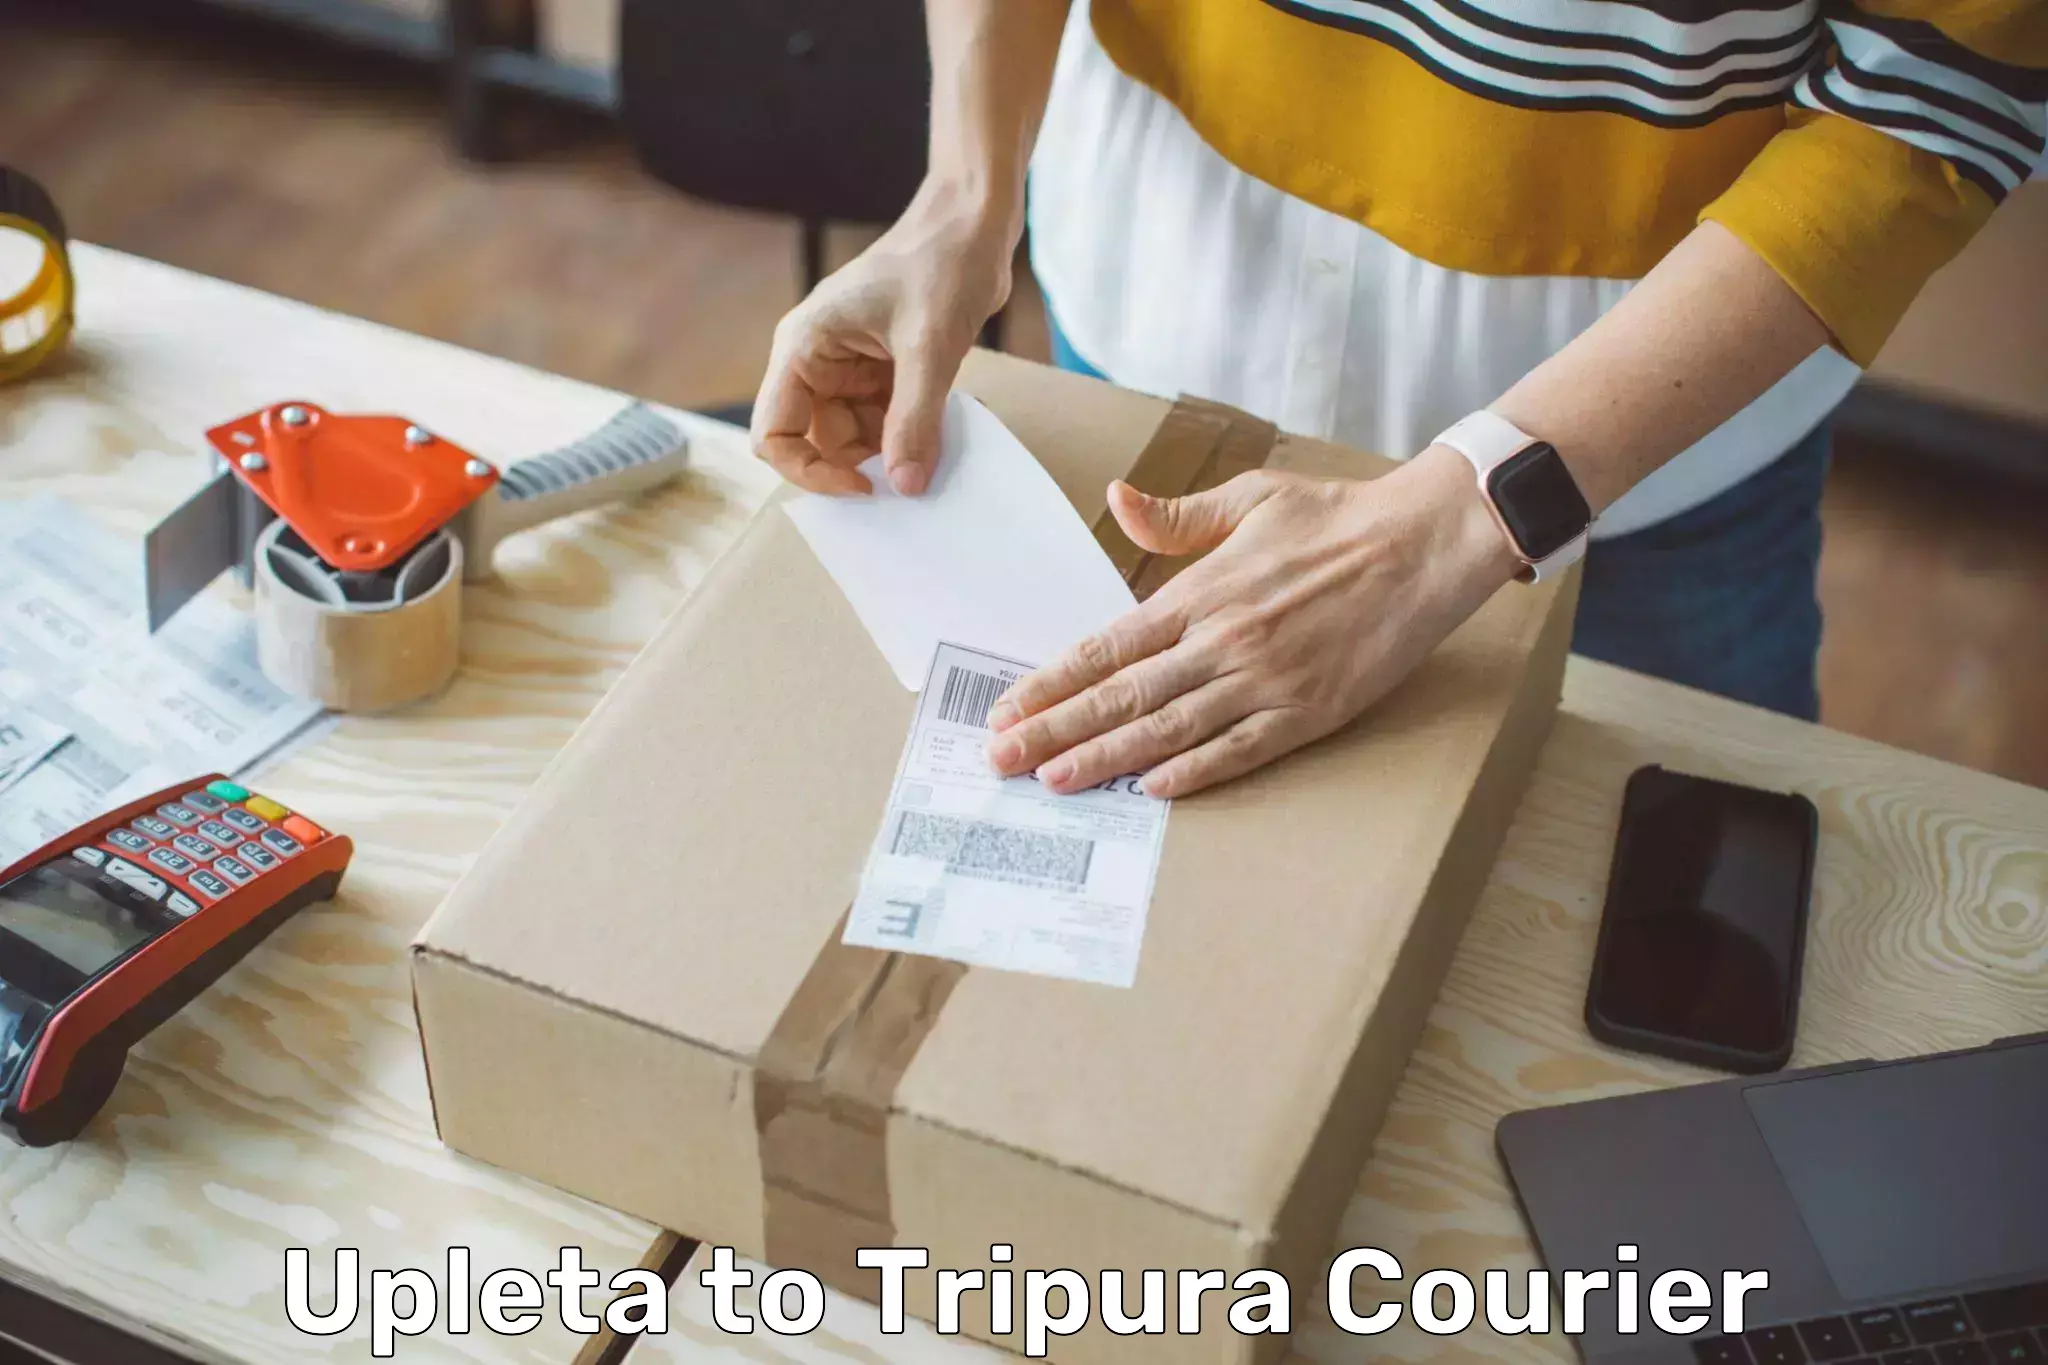 Premium courier services Upleta to Udaipur Tripura